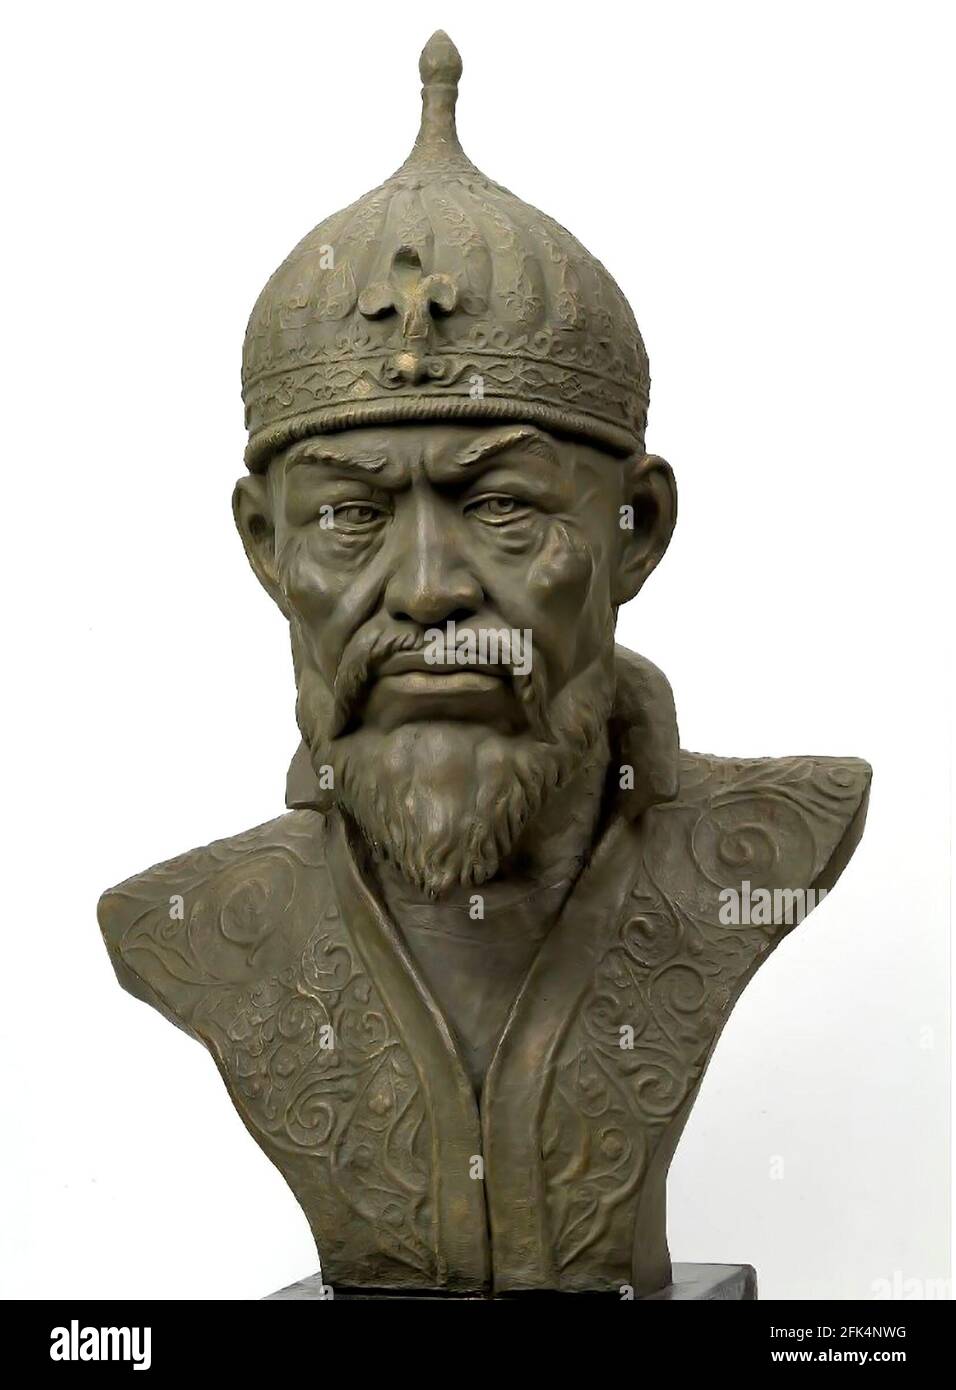 Tamerlane. Ricostruzione facciale del conquistatore Turco-Mongol, Timur (1336-1405) Foto Stock